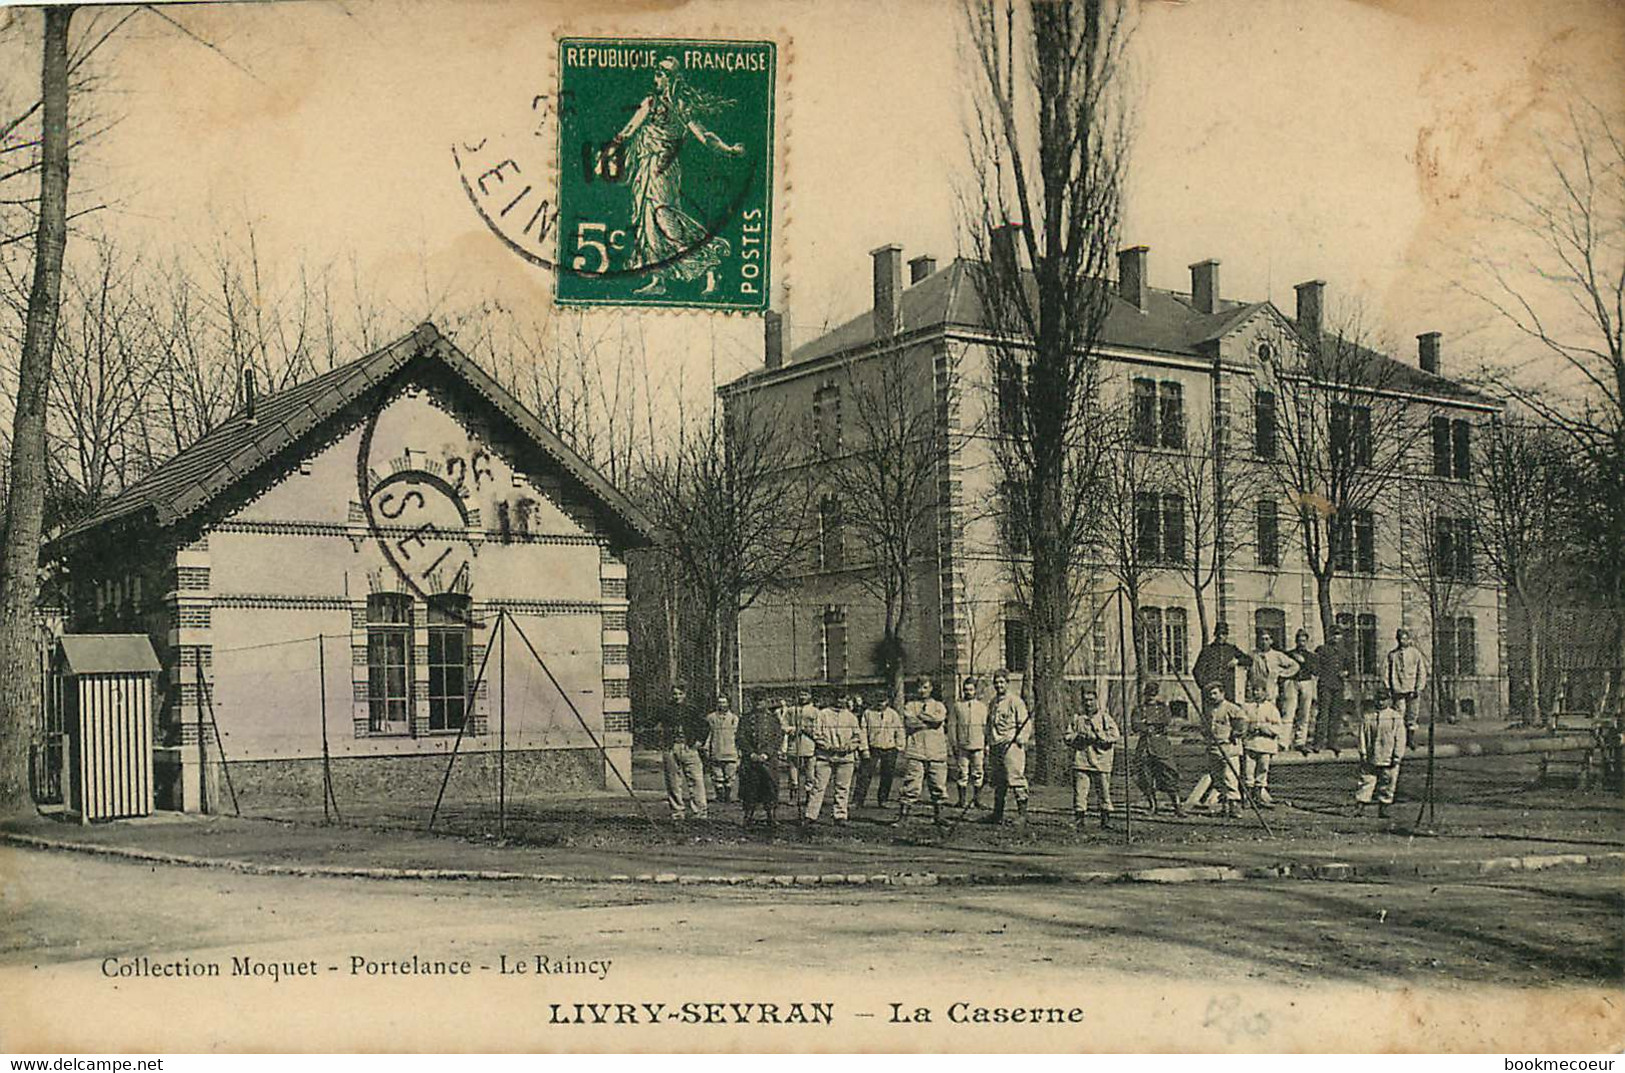 LIVRY SEVRAN LA CASERNE - Livry Gargan